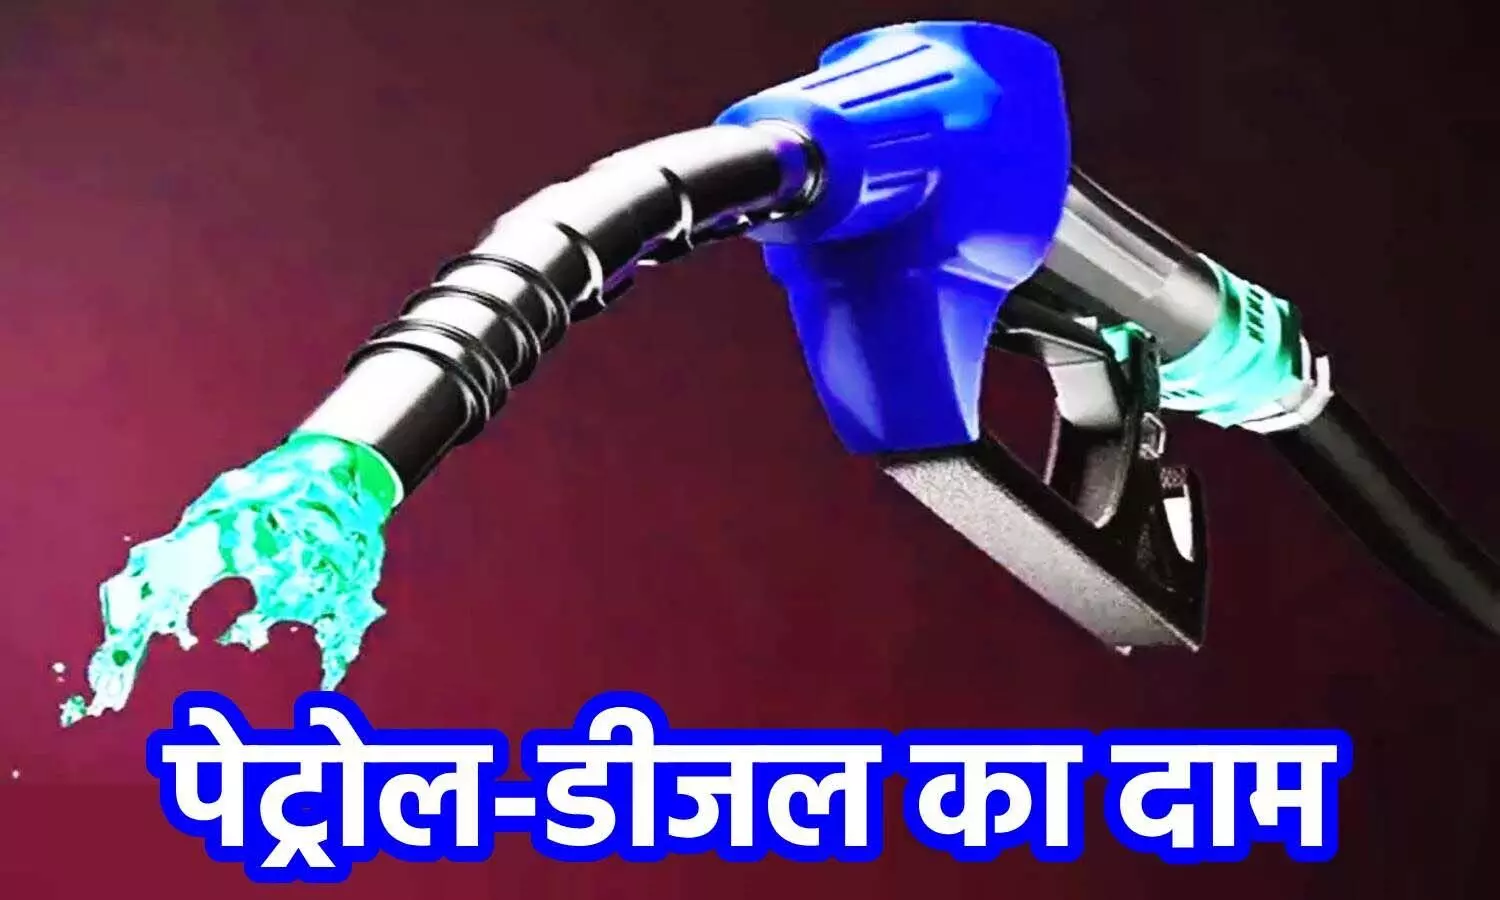 Petrol-diesel price : भुवनेश्वर में आज पेट्रोल-डीजल की कीमतों में बढ़ोतरी हुई